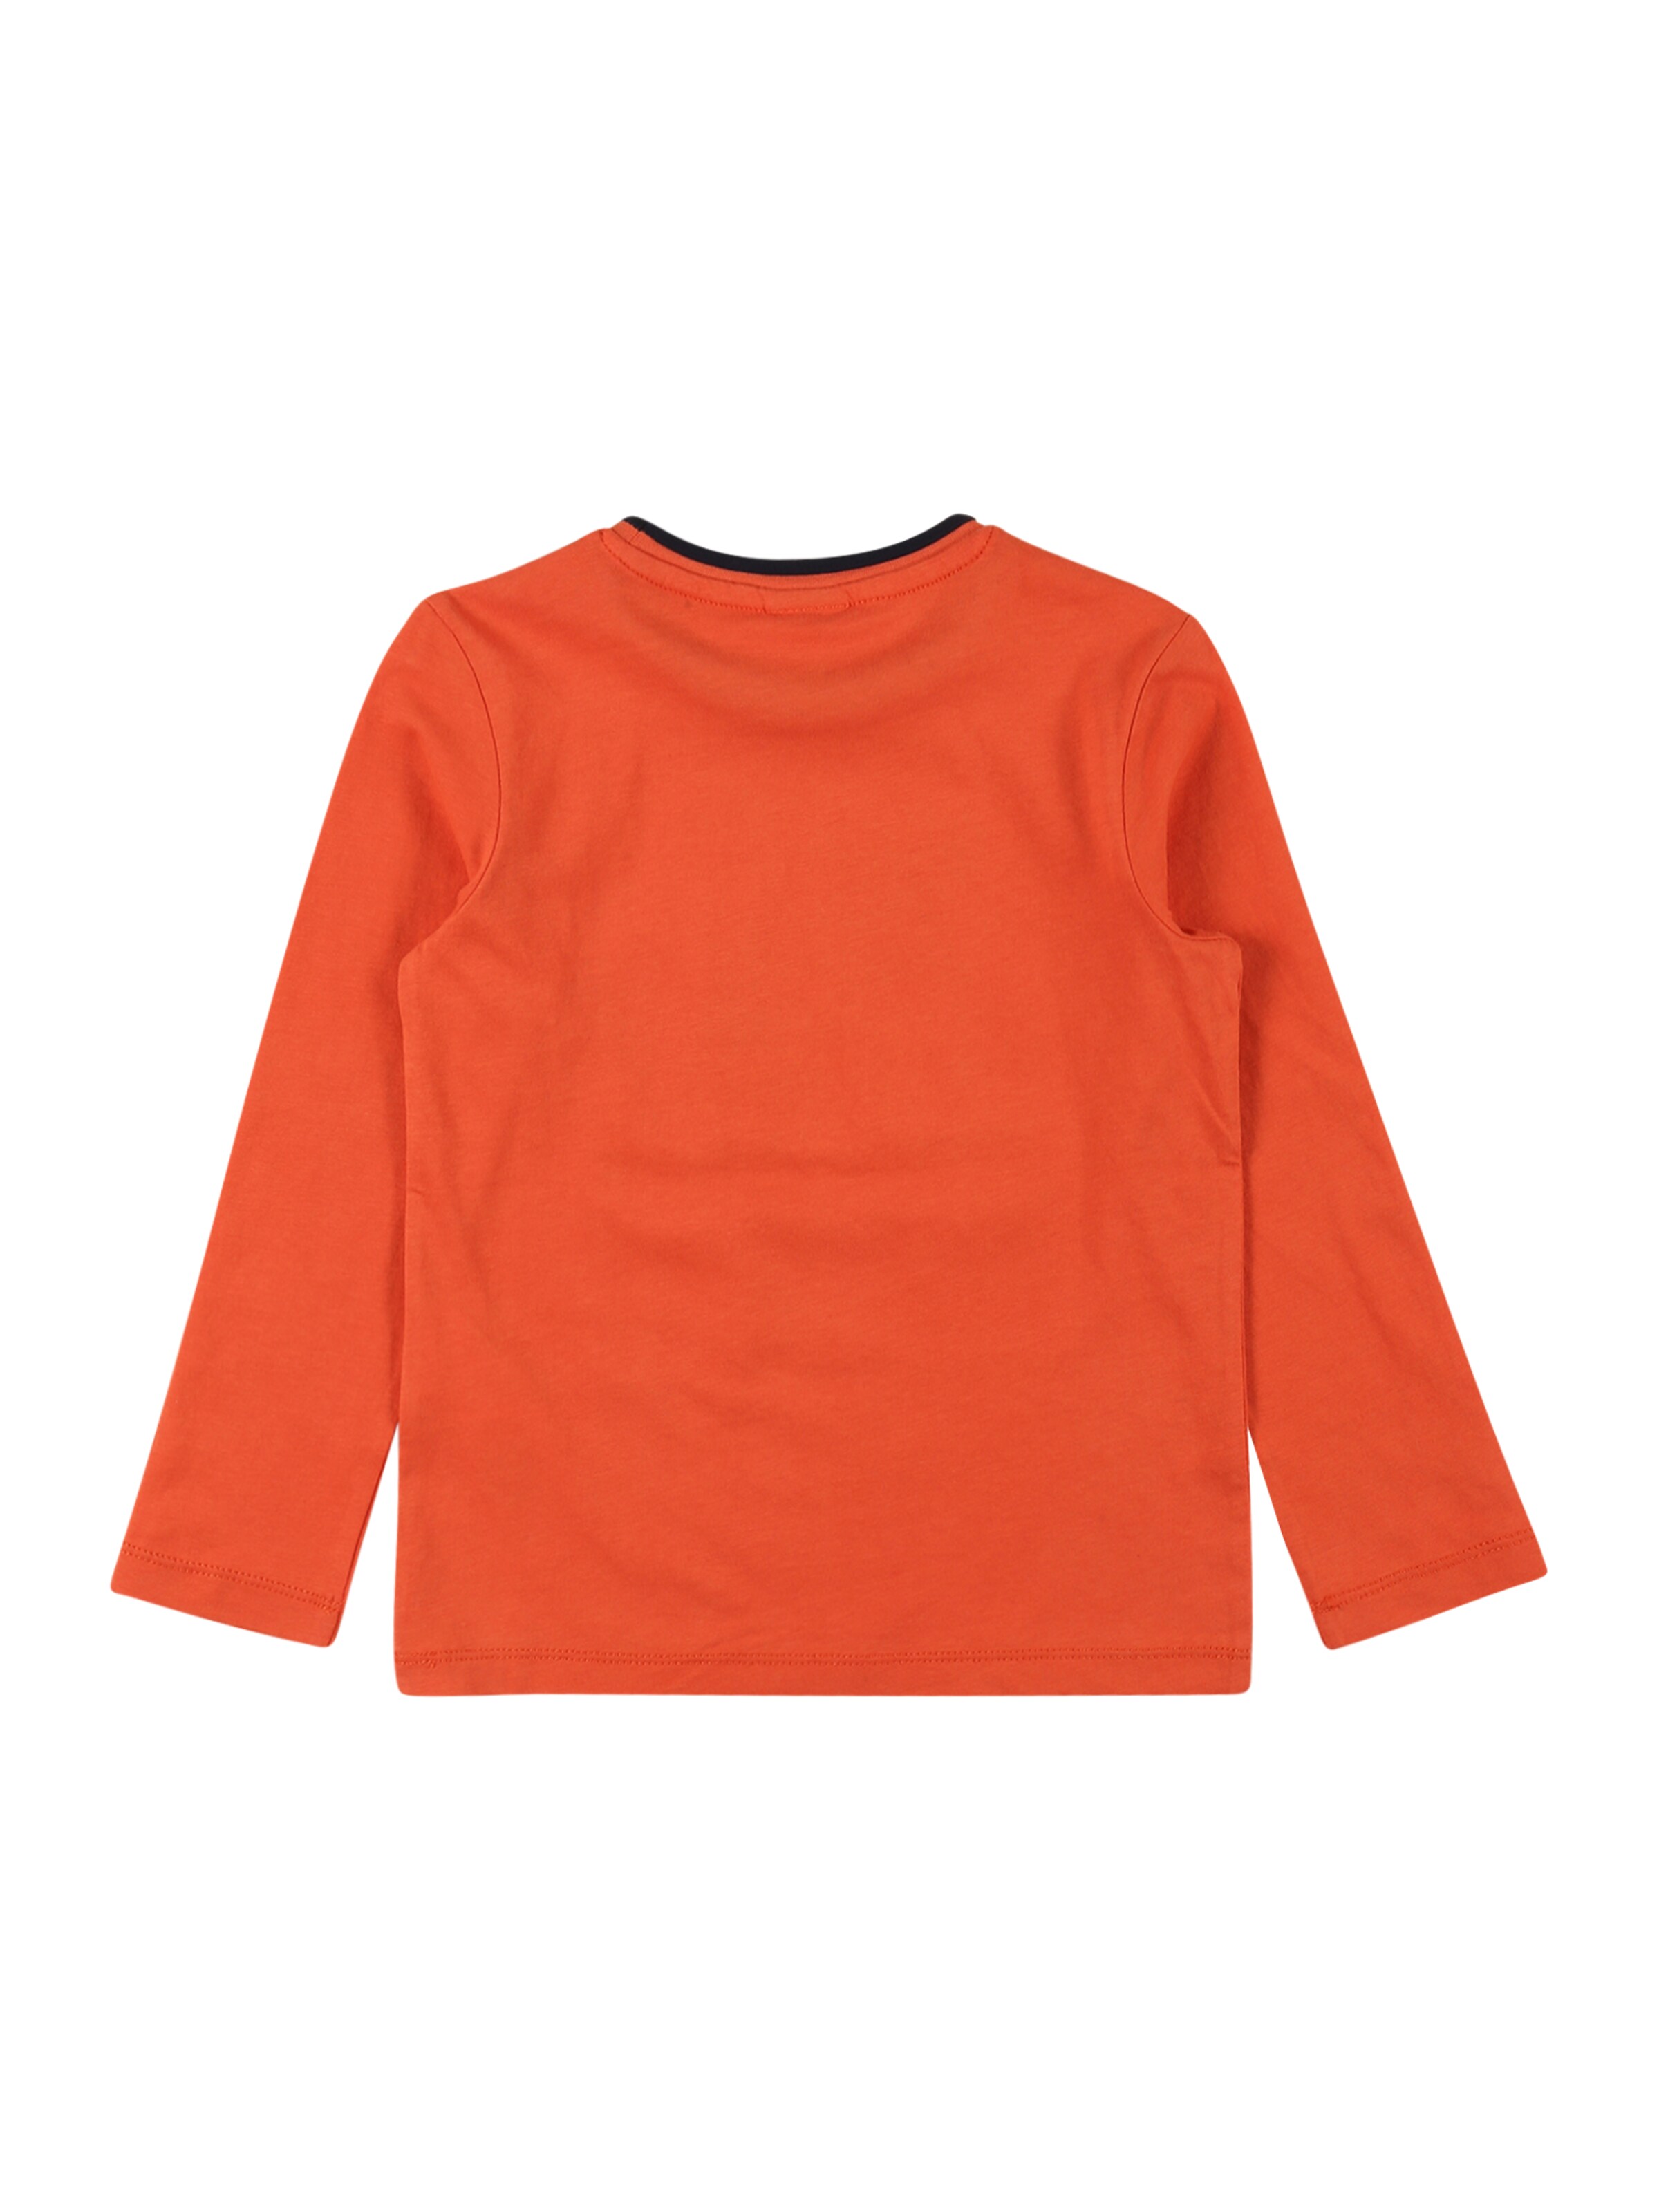 Kinder Kids (Gr. 92-140) s.Oliver Shirt in Orange - CG03264